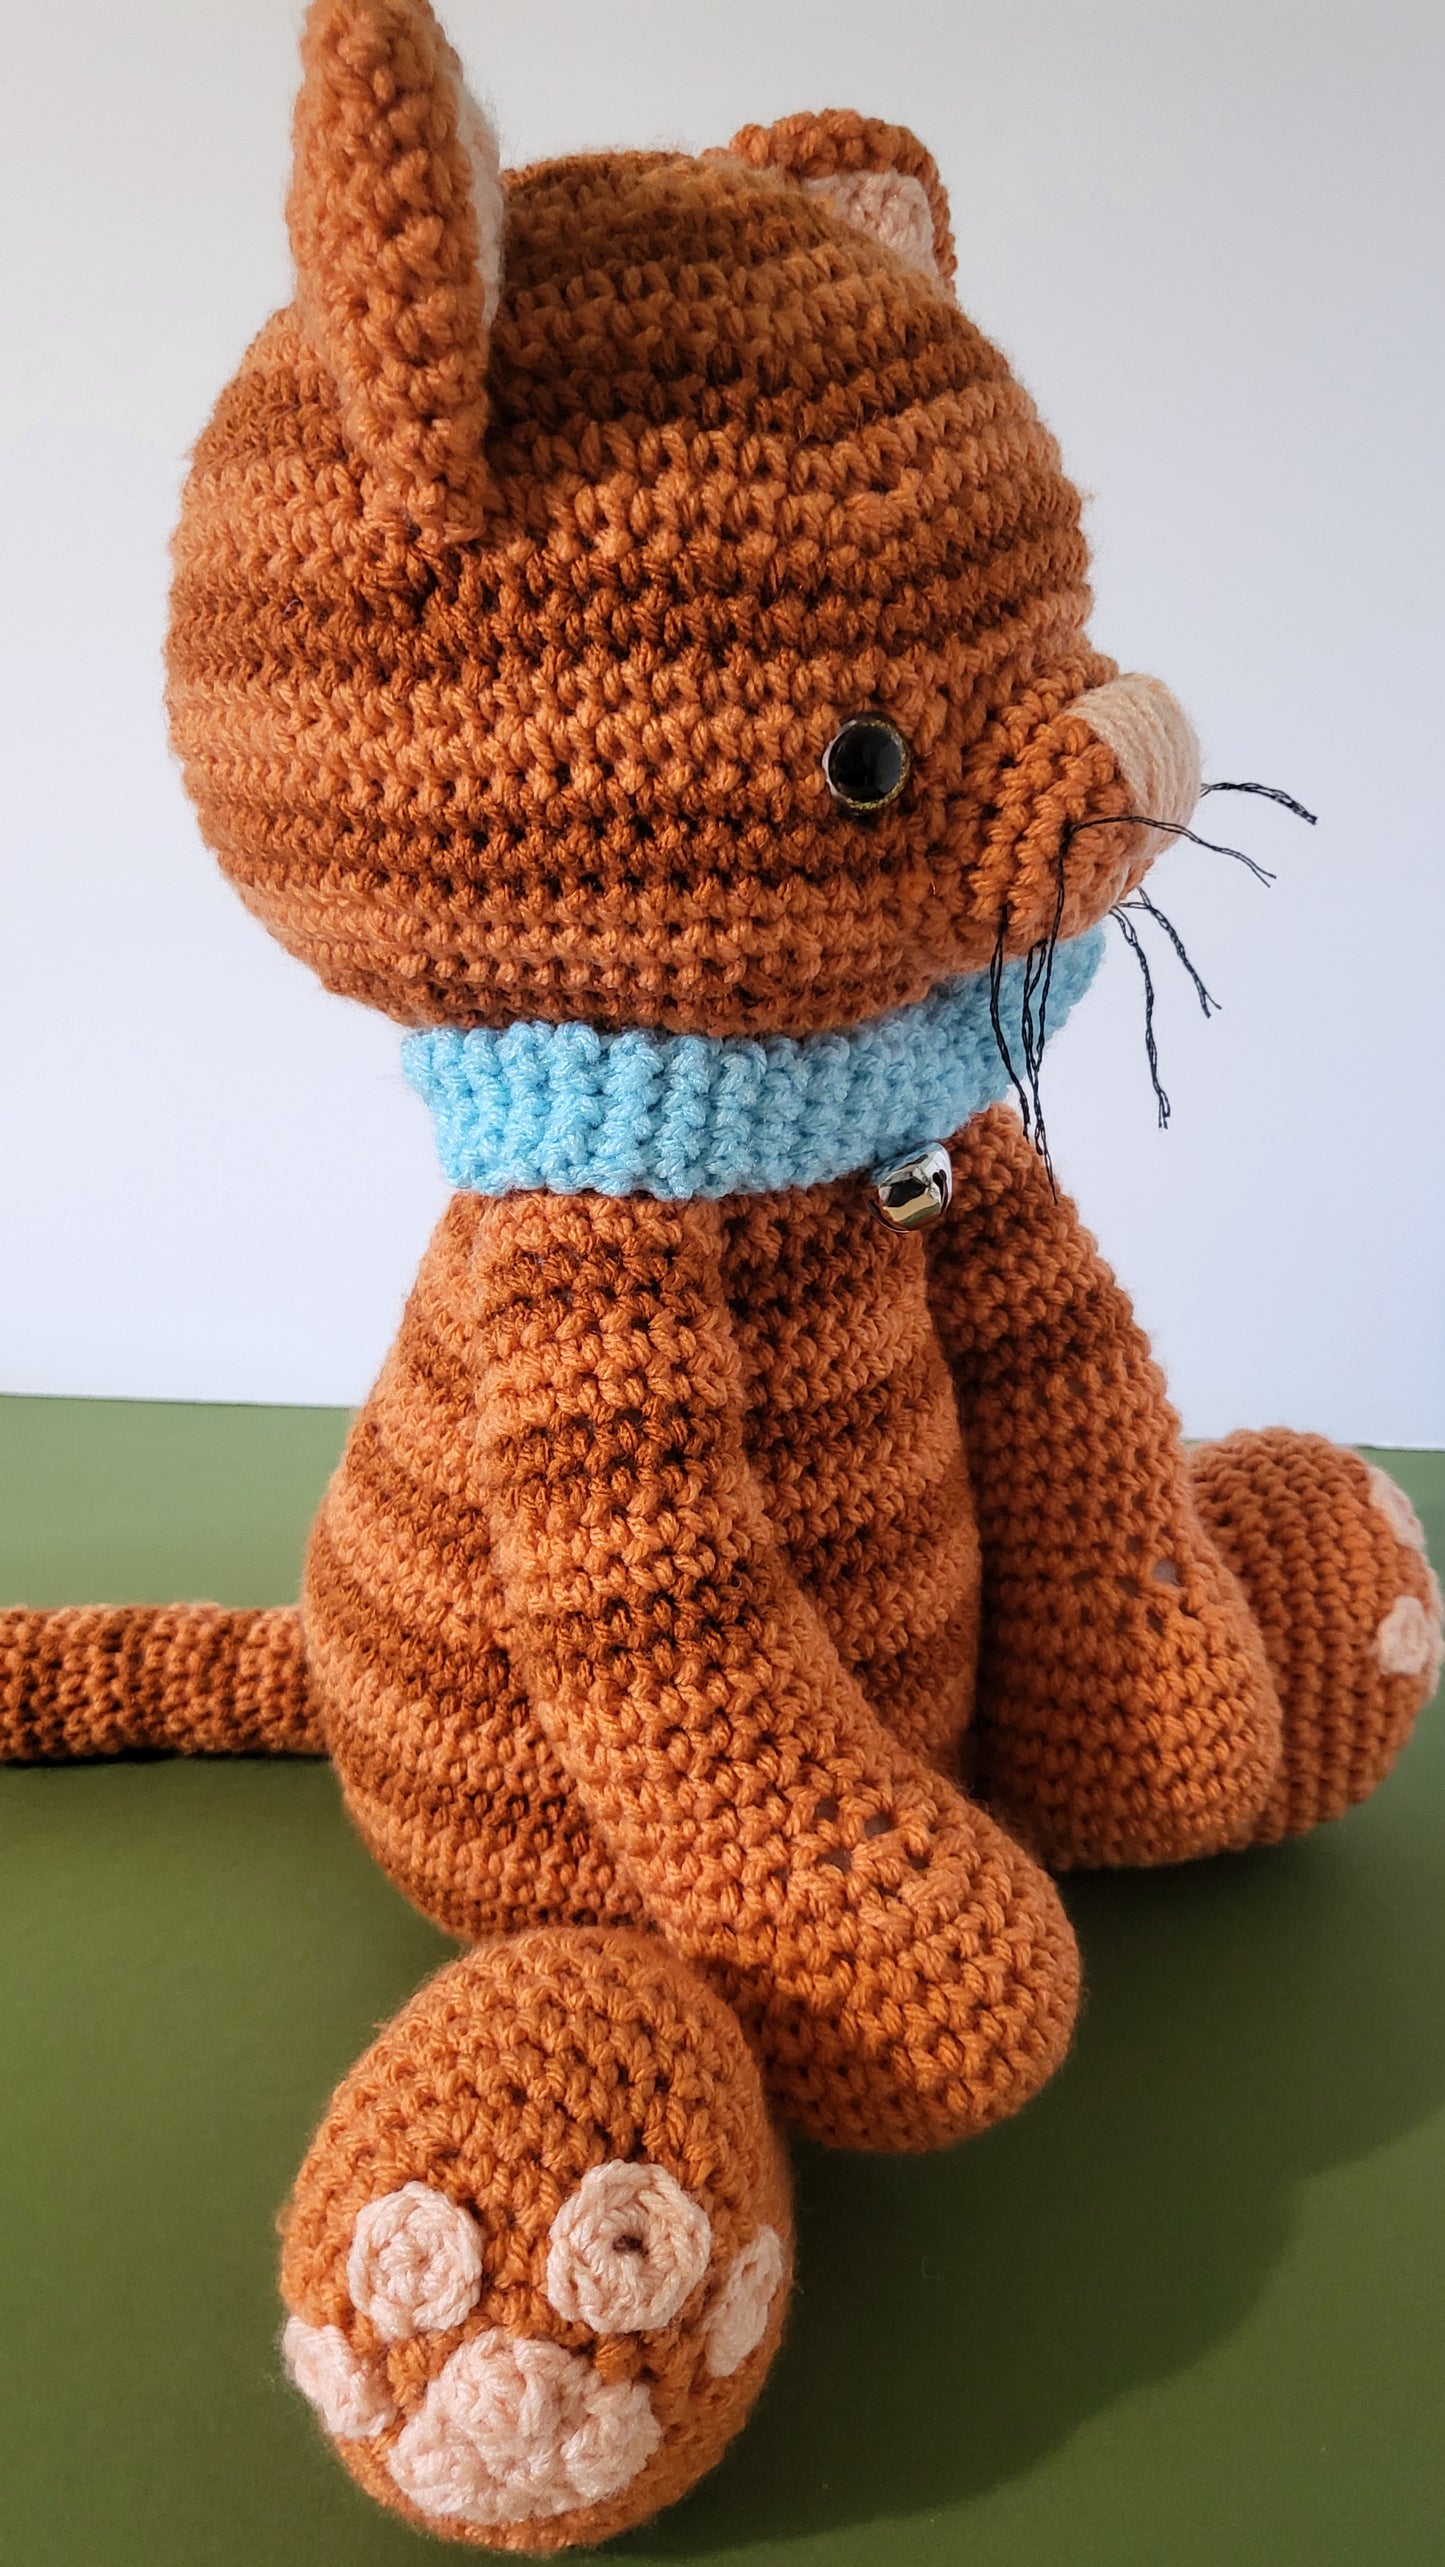 Crochet orange tabby cat